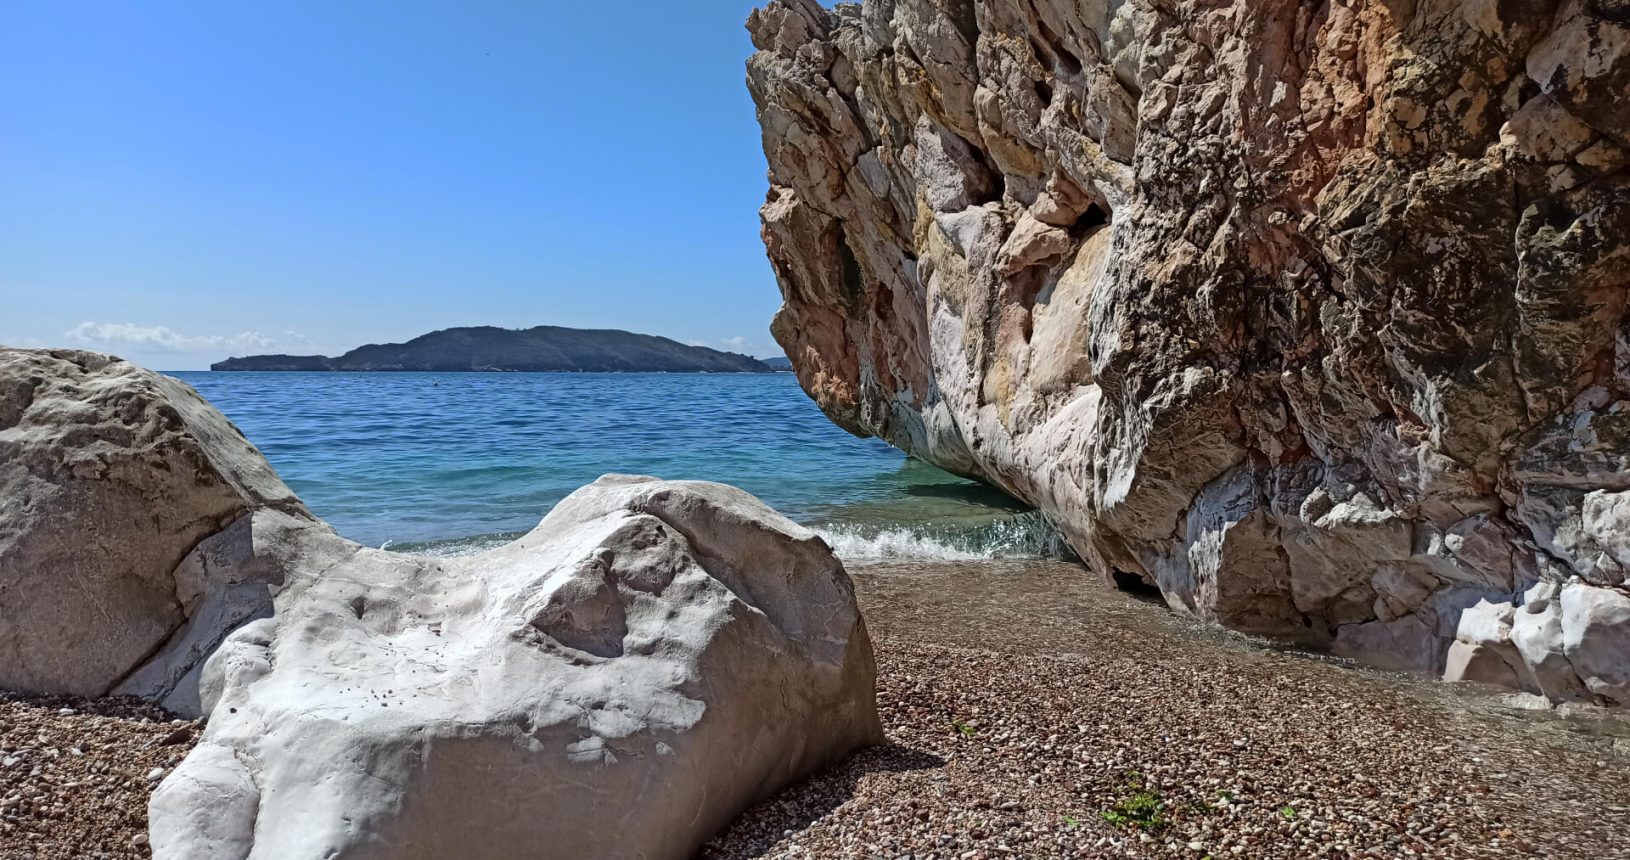 Big stones at Przno beach